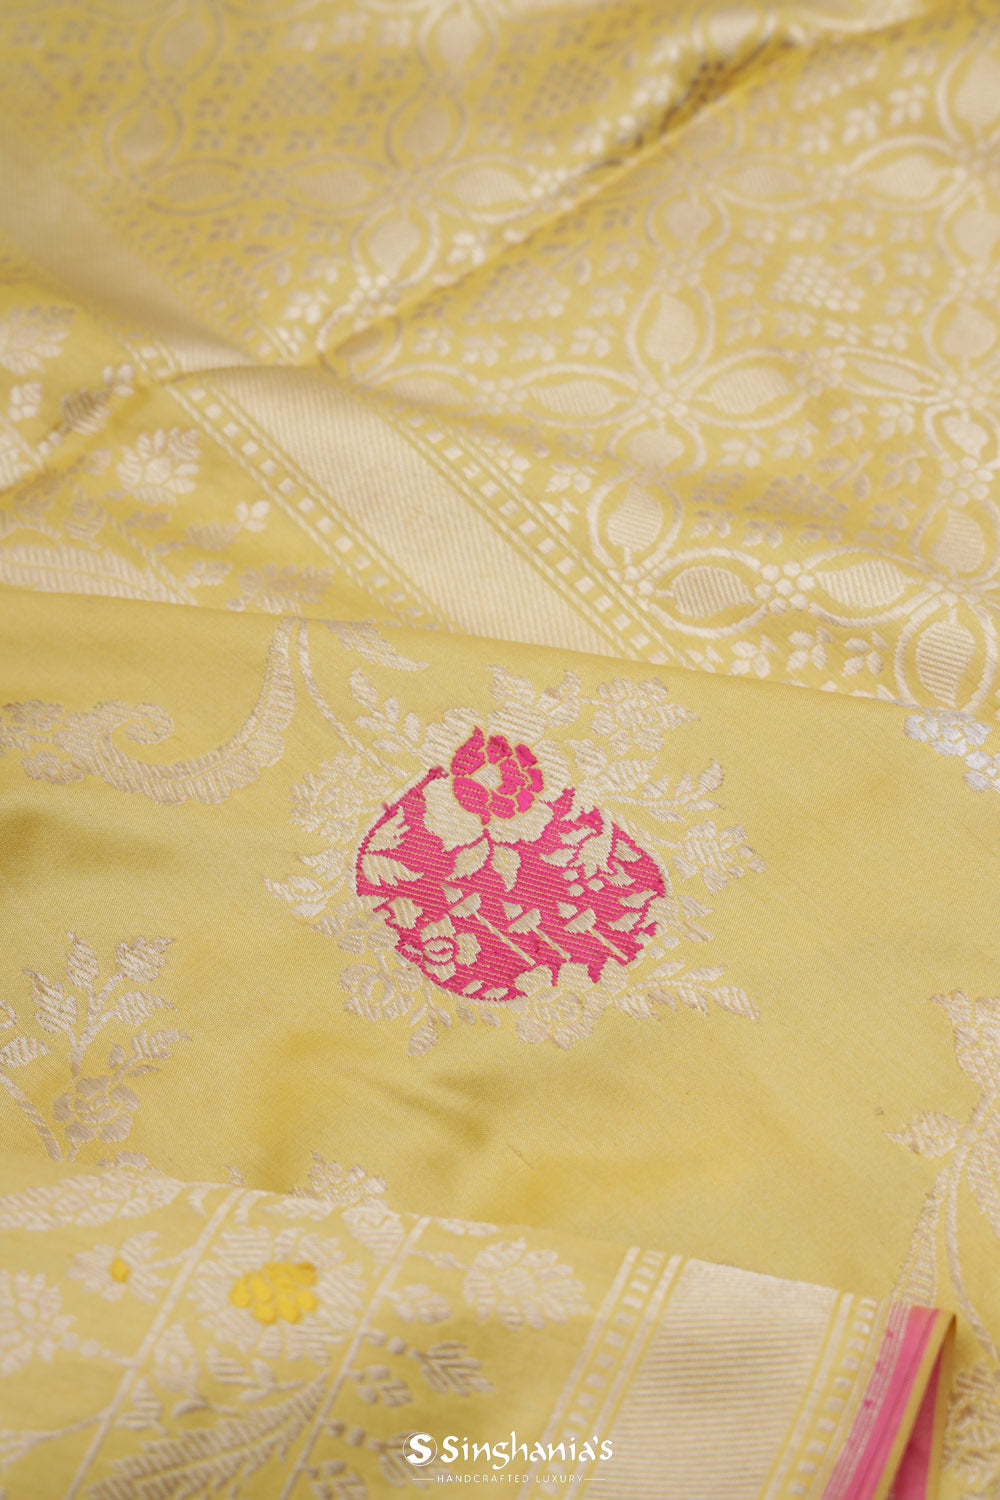 Flax Yellow Banarasi Silk Saree With Floral Design